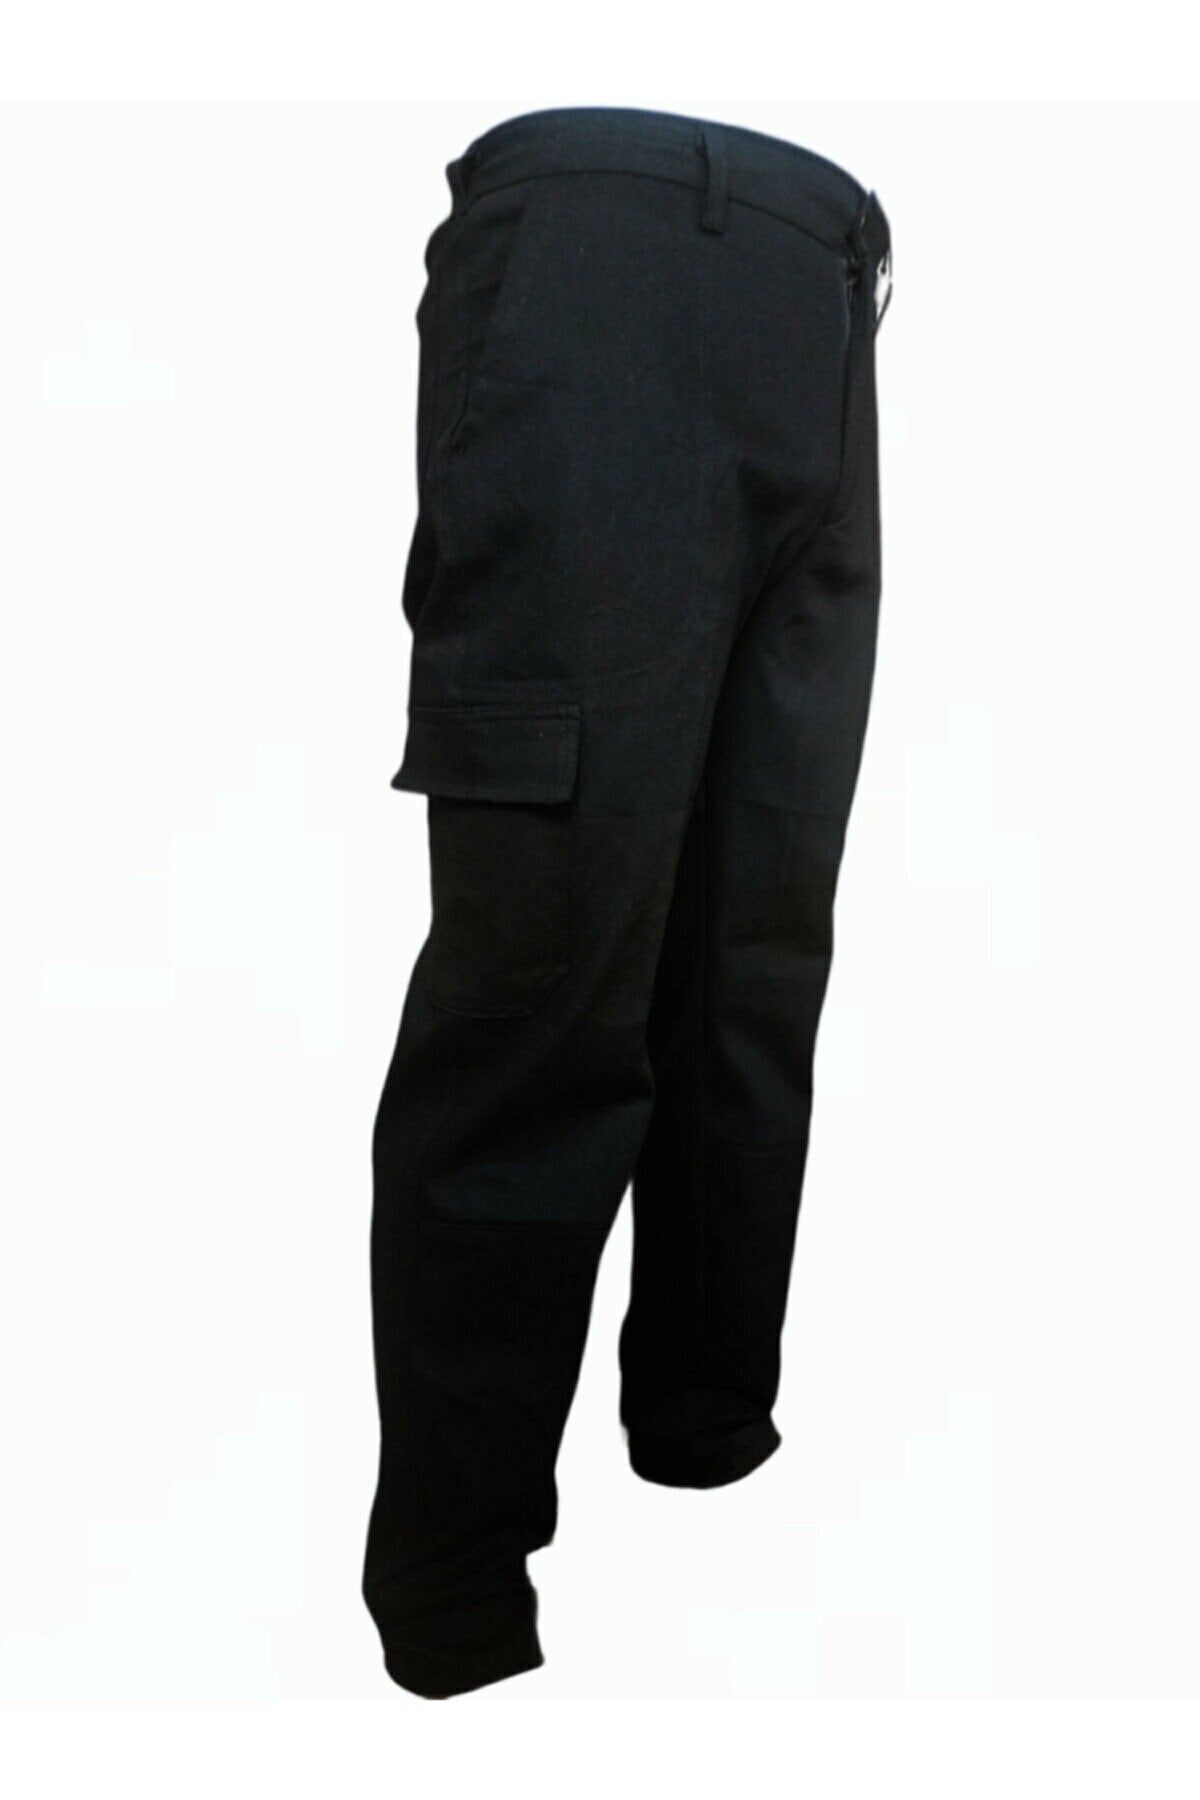 Genel Markalar Iş Pantolonu Siyah Komando Cepli (bol Kesim) 2. Resimden Beden Ölçünüzü Öğrenebilirsiniz.